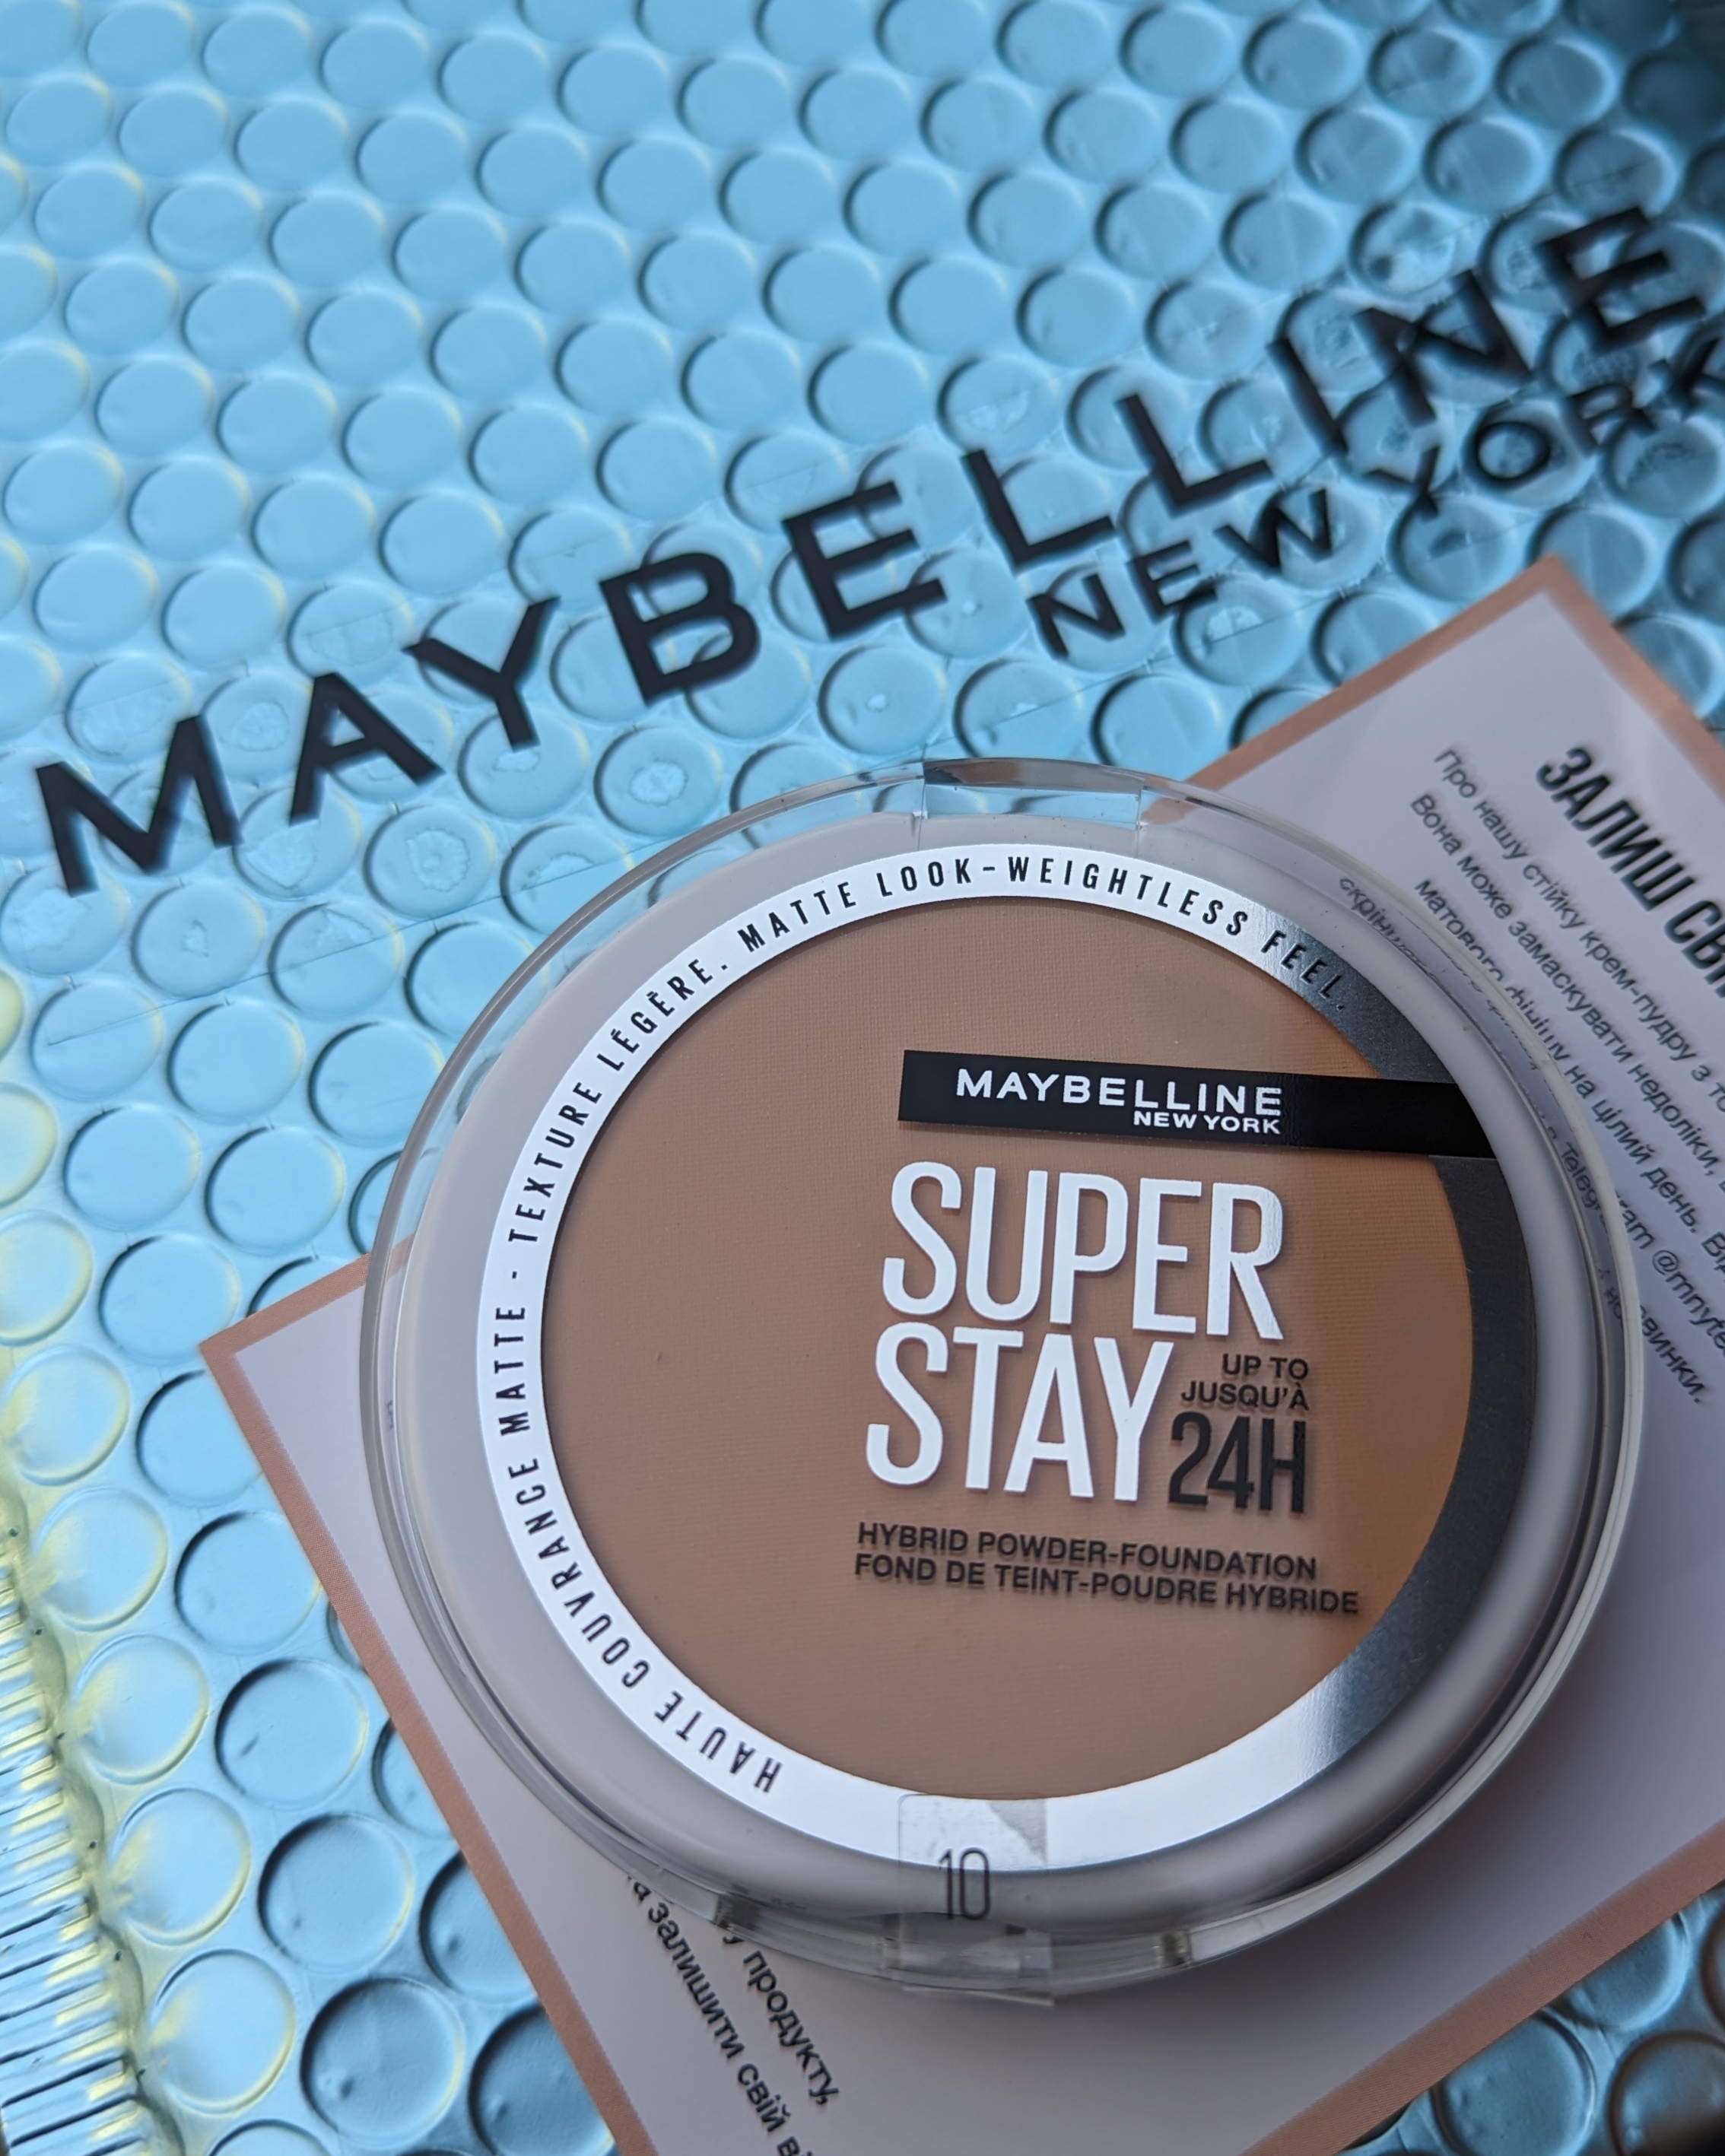 Maybelline Super Stay Hybrid powder foundation